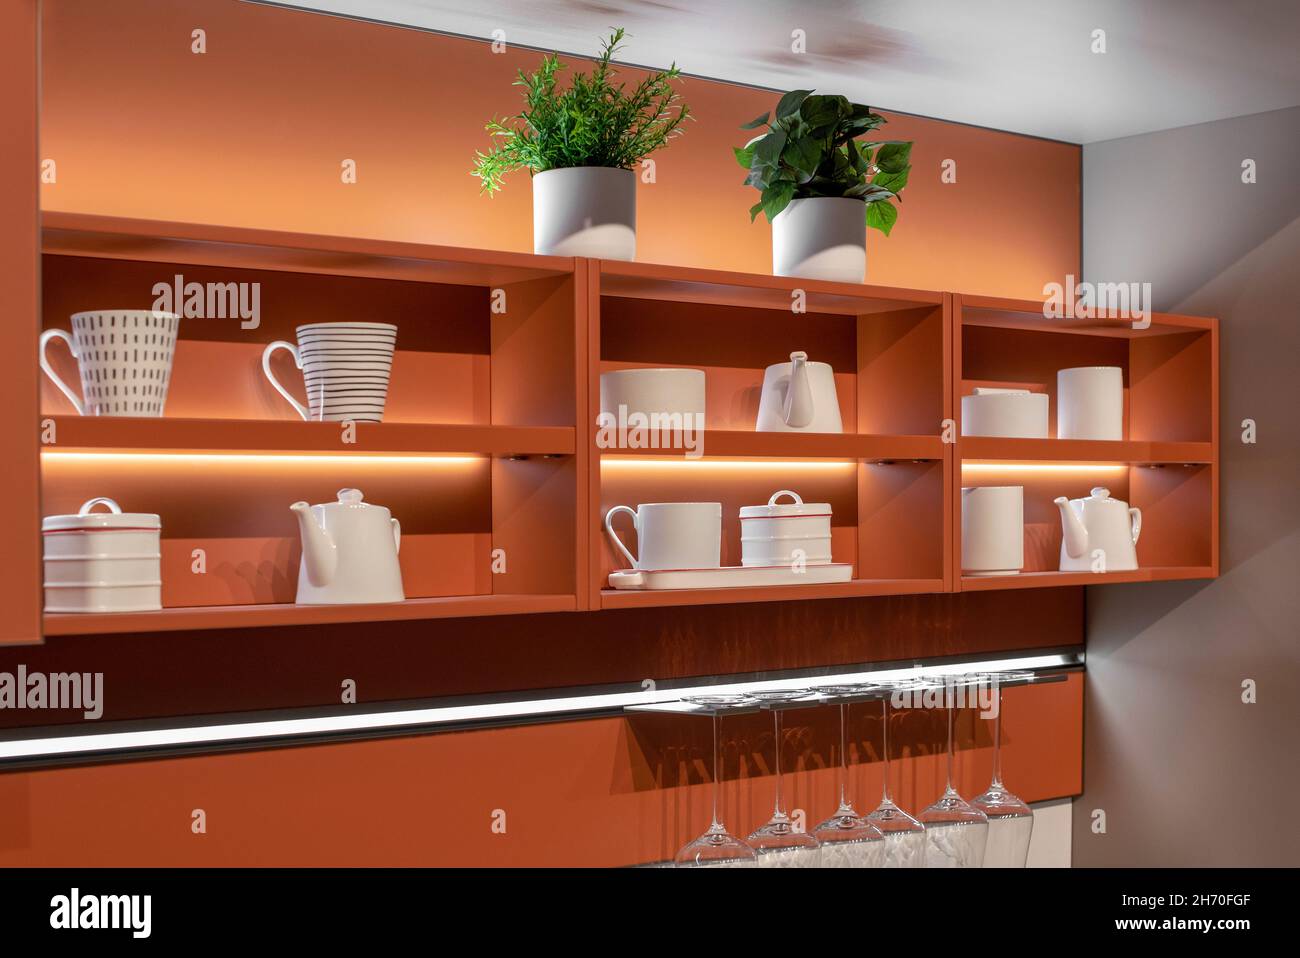 Exposition décorative de céramique blanche sur une étagère de cuisine en bois montée sur un mur avec un rack de verres propres dans un décor intérieur a Banque D'Images